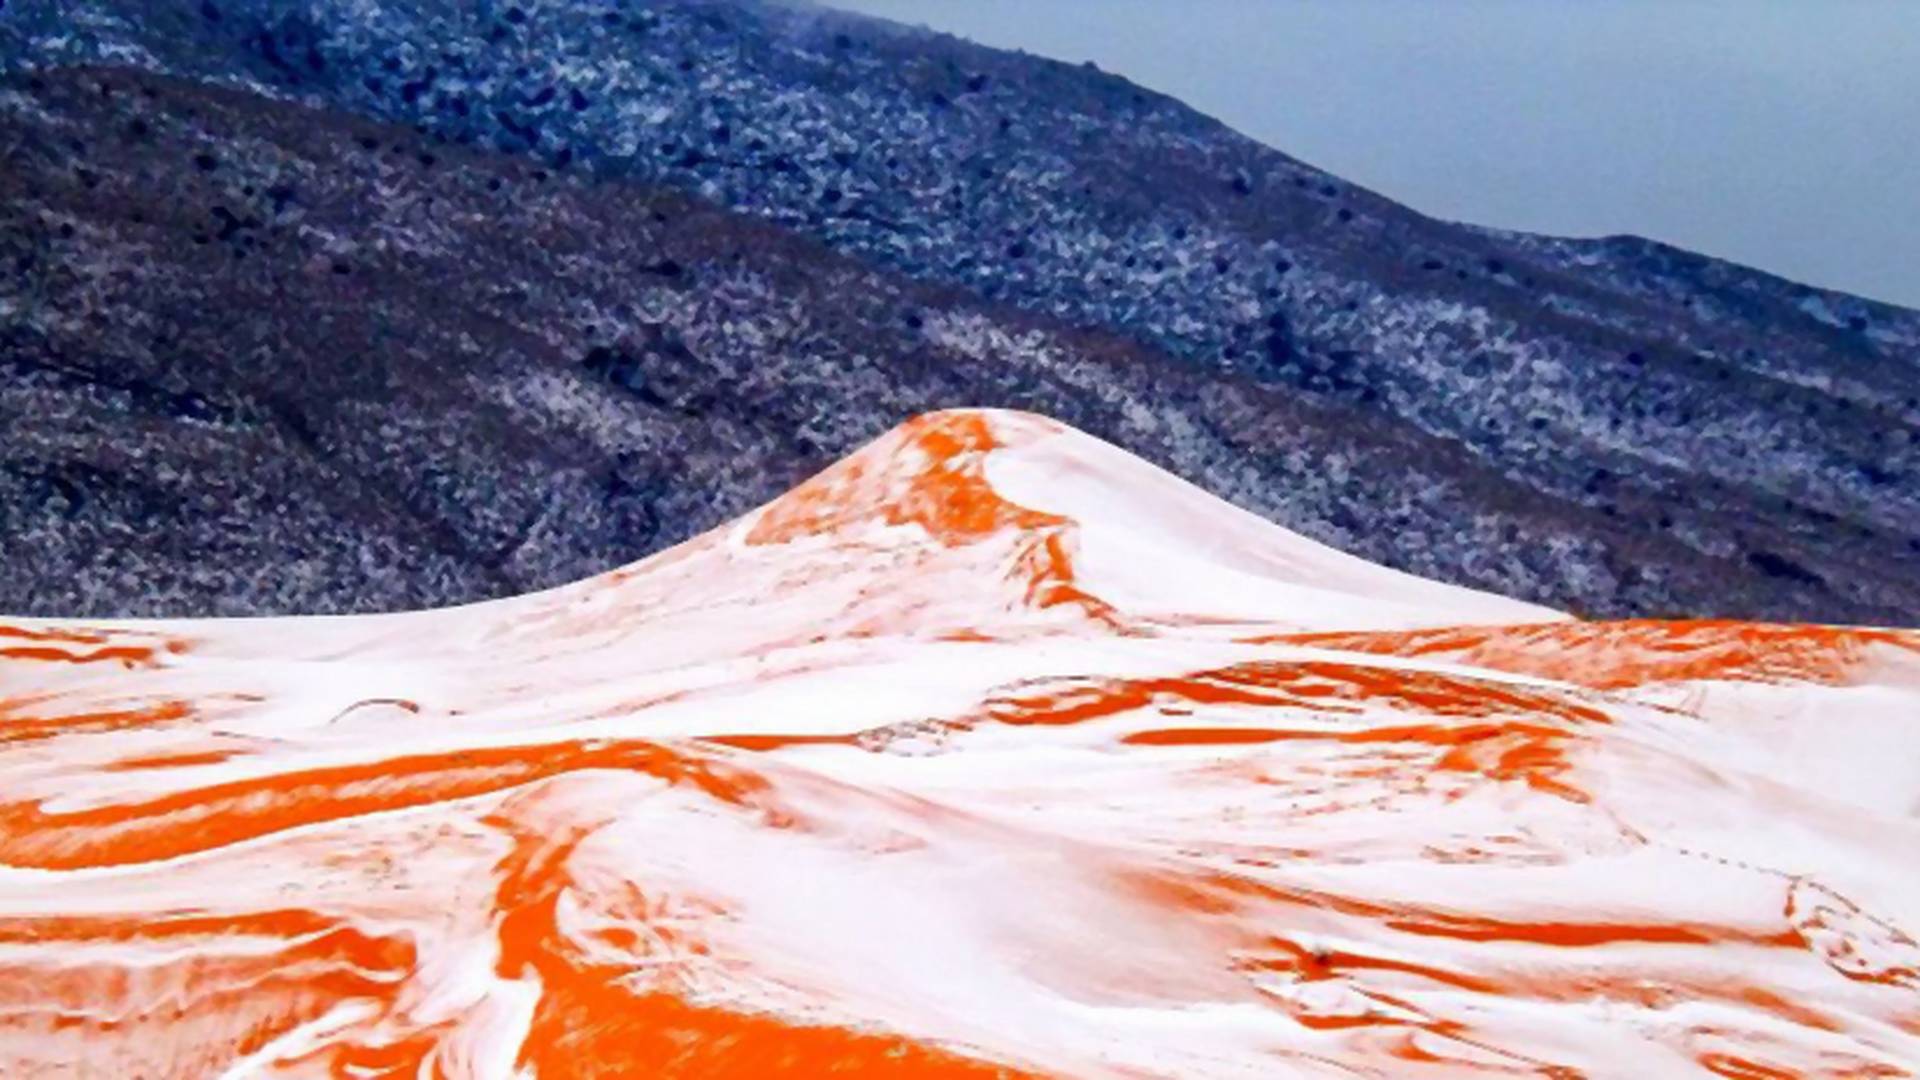 Śnieg na Saharze po raz pierwszy od 37 lat. Zobacz niesamowite zdjęcia